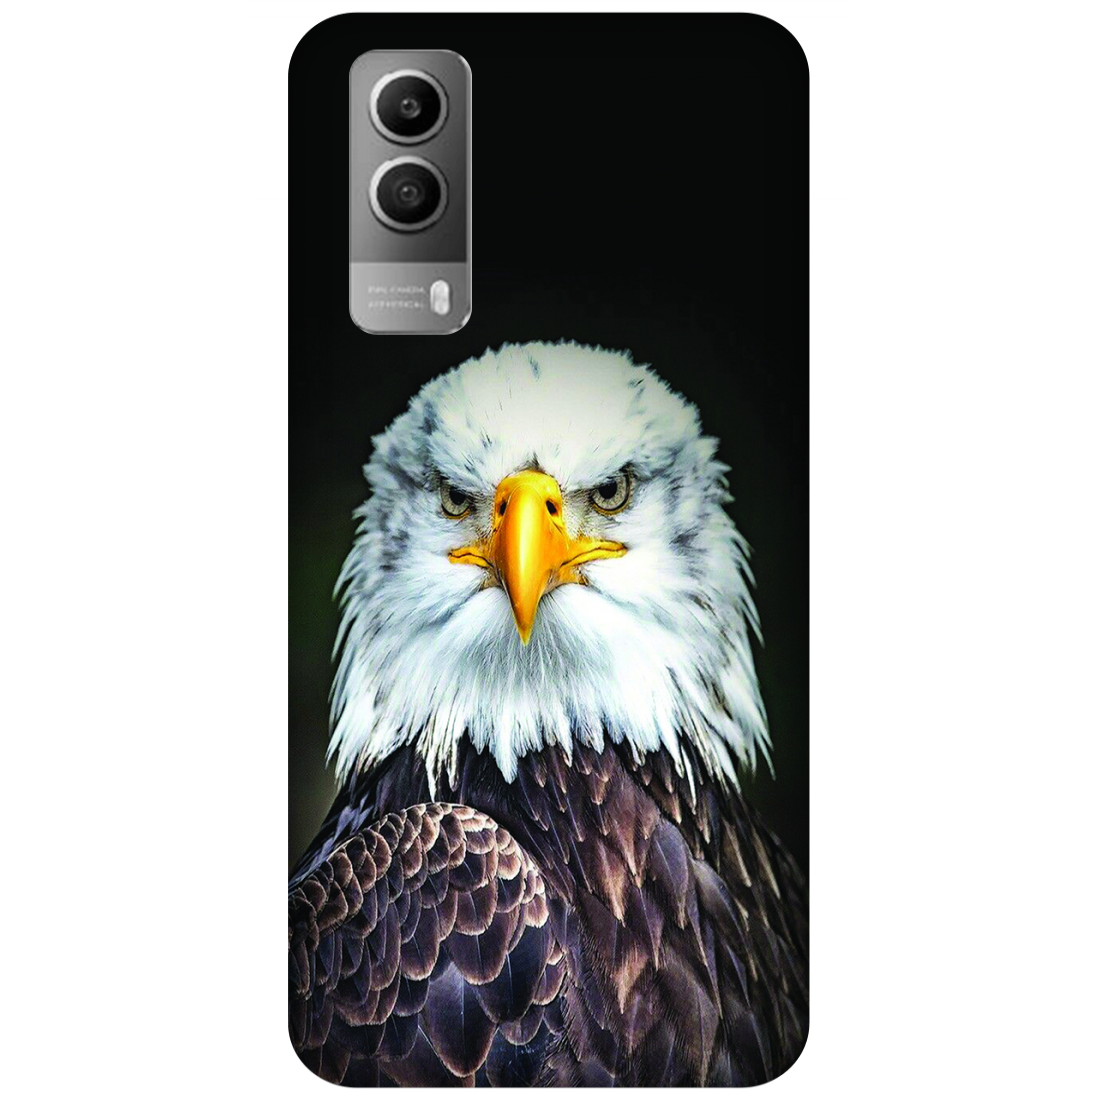 Majestic Bald Eagle Portrait Case Vivo Y53s